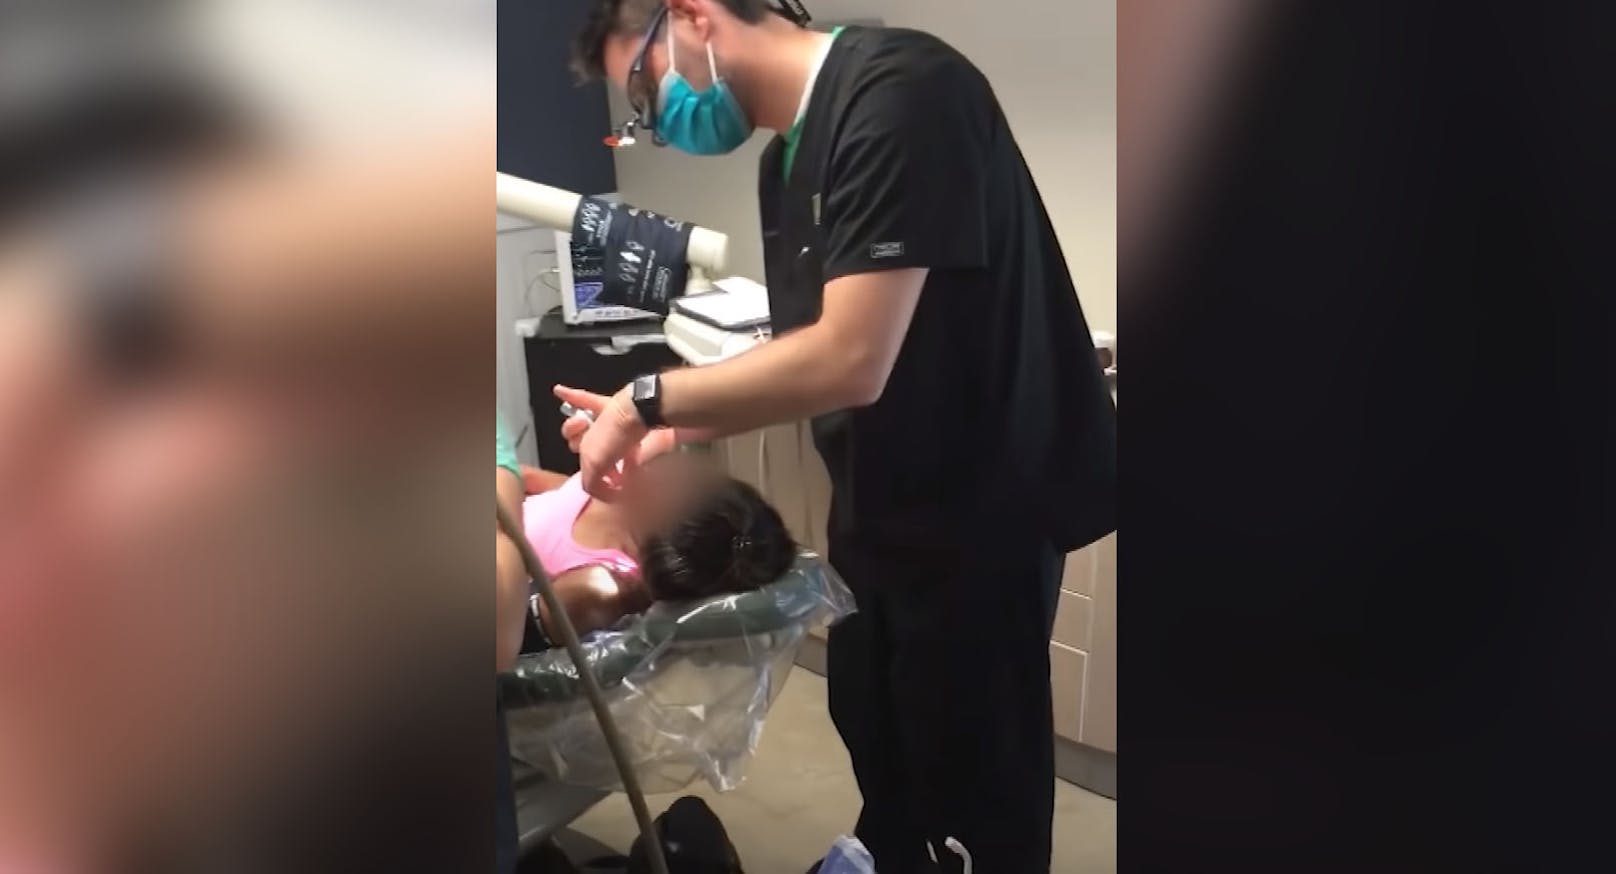 Ein Mediziner aus Alaska wurde wegen Betruges verurteilt – in diesem Video operiert er auf einem Kinderspielzeug stehend.